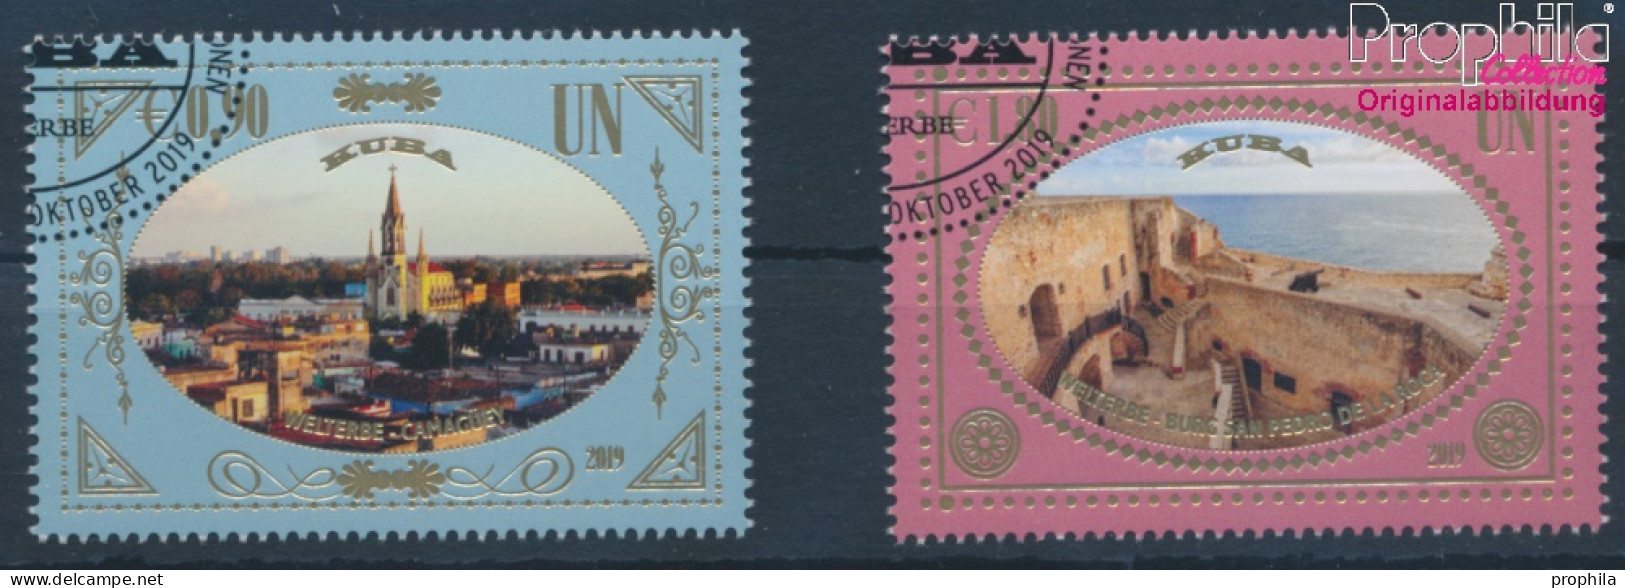 UNO - Wien 1070-1071 (kompl.Ausg.) Gestempelt 2019 UNESCO Welterbe Kuba (10357216 - Used Stamps